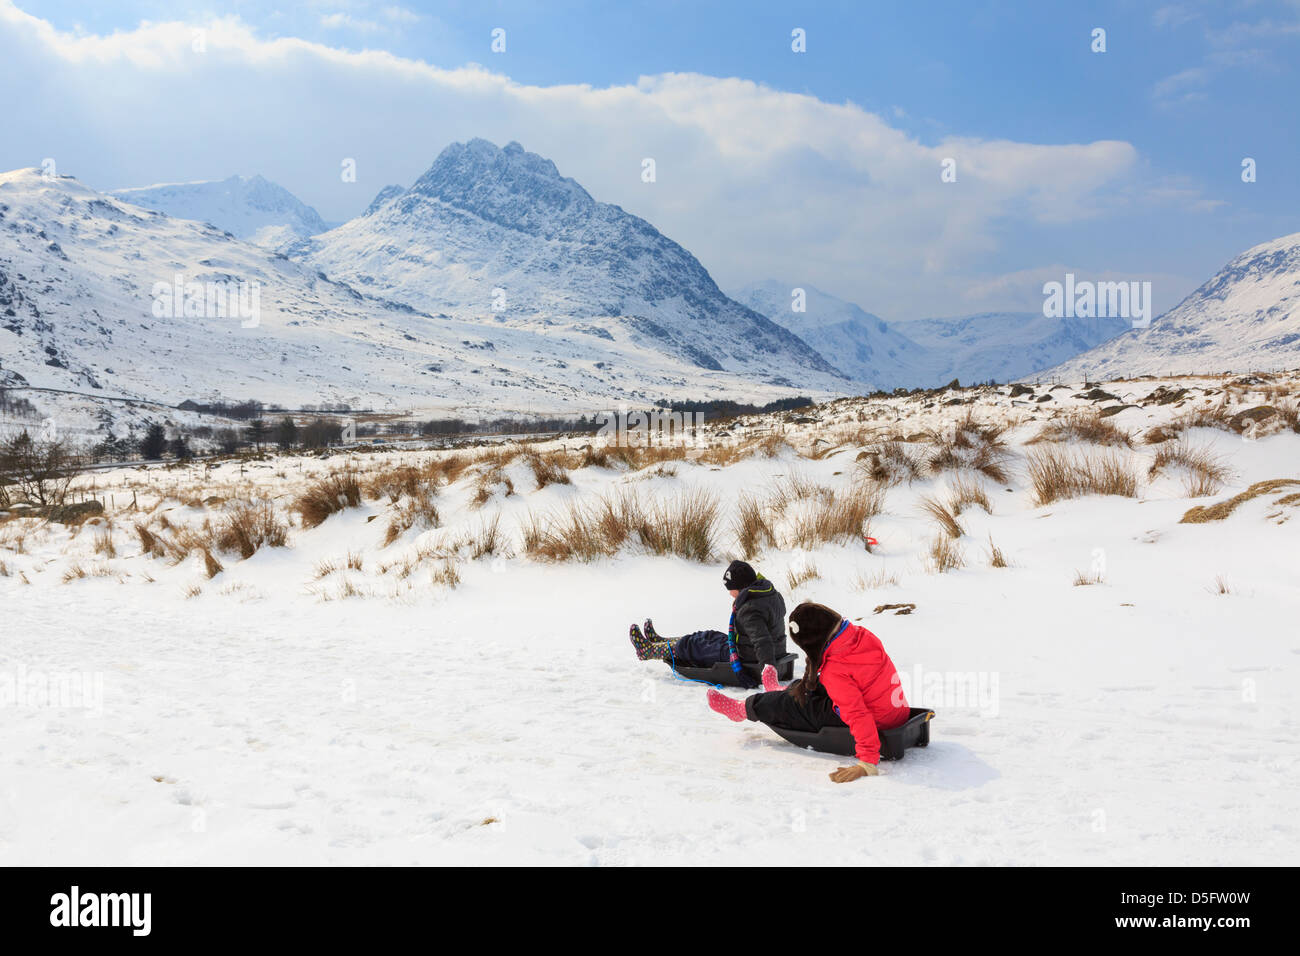 Les enfants de la luge dans la région de montagnes de Snowdonia National Park par temps froid et d'importantes chutes de neige. Ogwen Valley, au nord du Pays de Galles, Royaume-Uni Banque D'Images